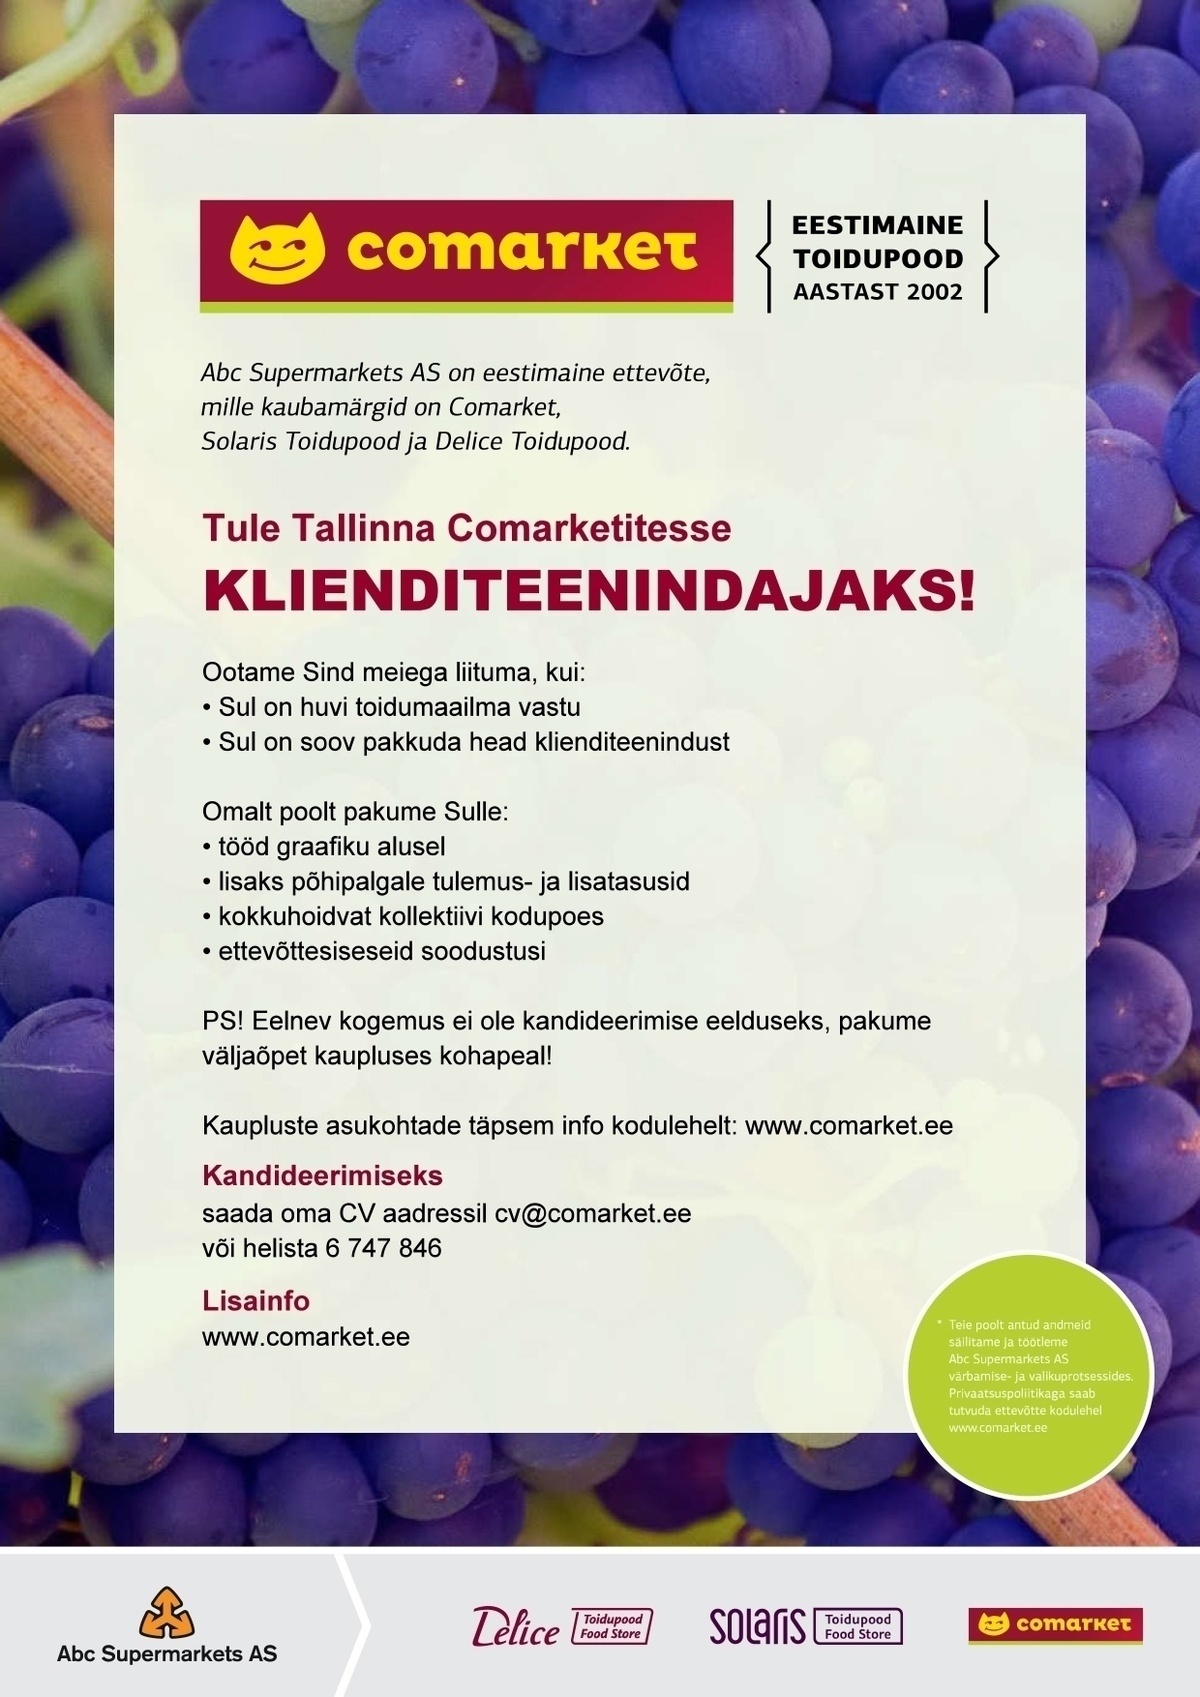 Abc Supermarkets AS KLIENDITEENINDAJA Tallinna Comarketitesse